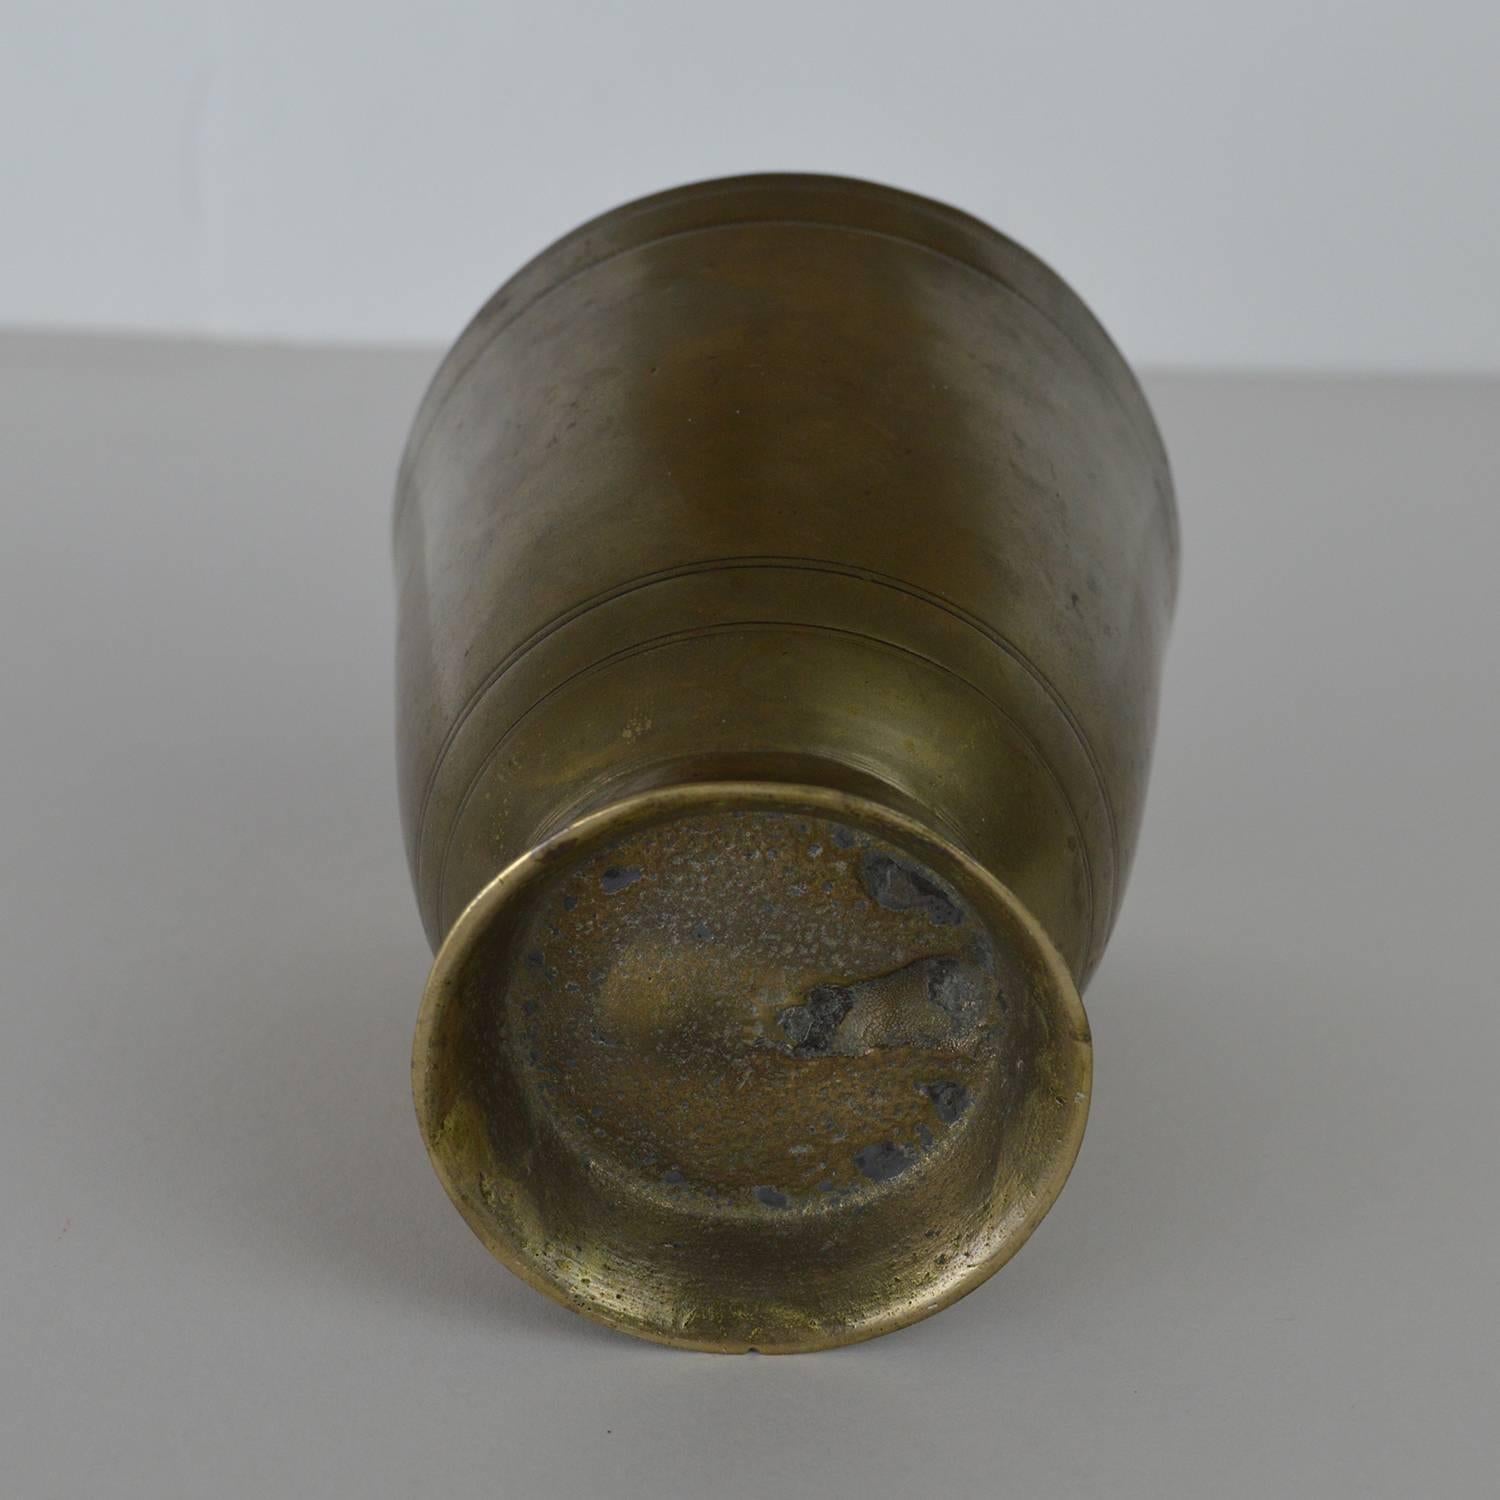 Cast Antique German Paktong Tumbler Cup, 17th Century